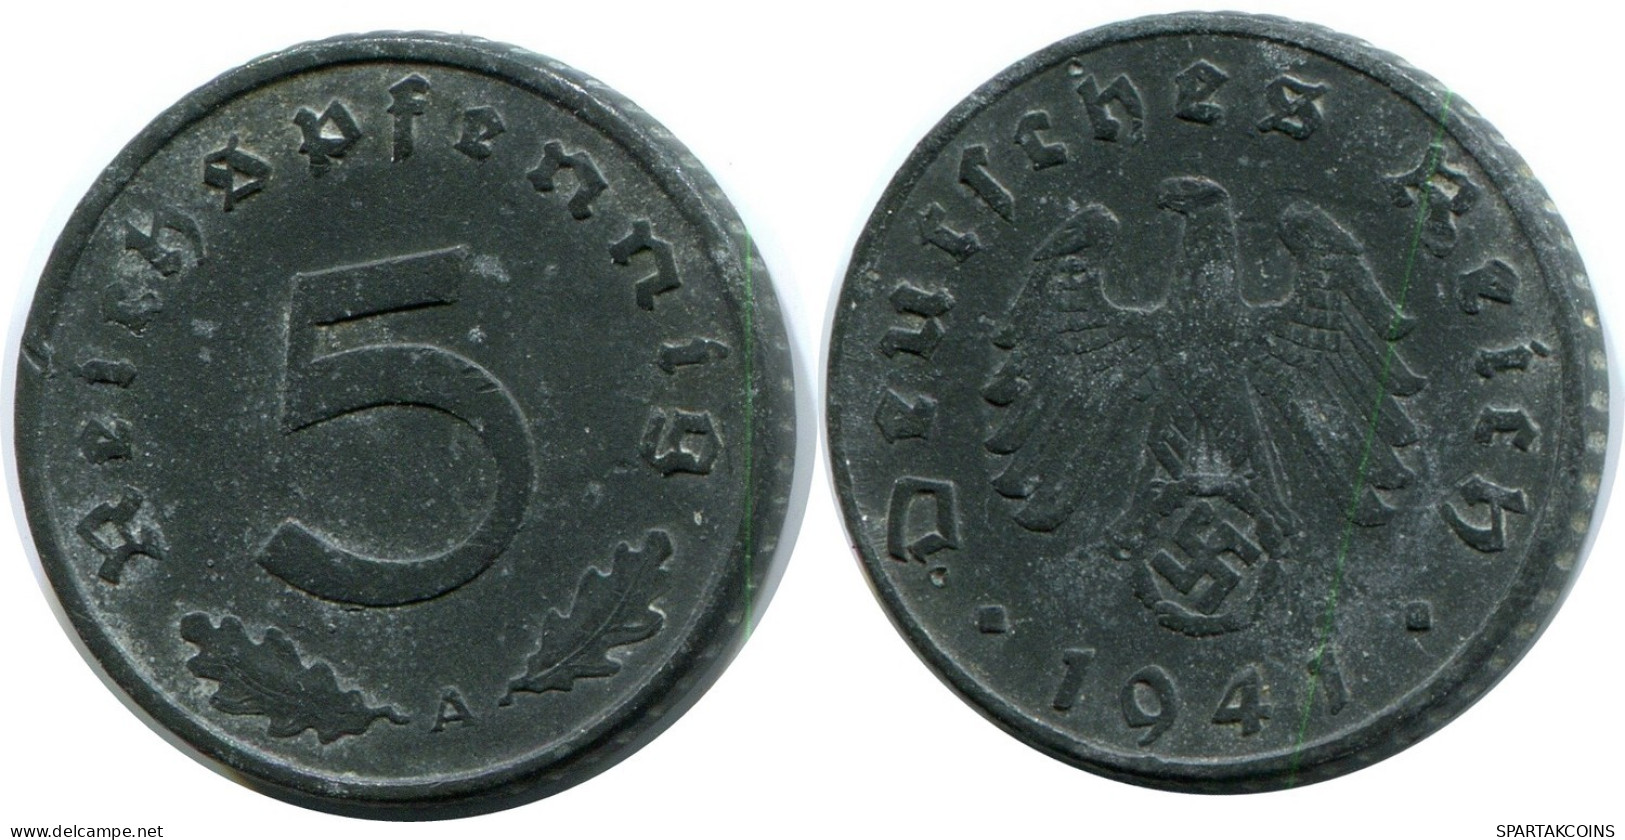 5 REICHSPFENNIG 1941 A GERMANY Coin #AX564.U.A - 5 Reichspfennig